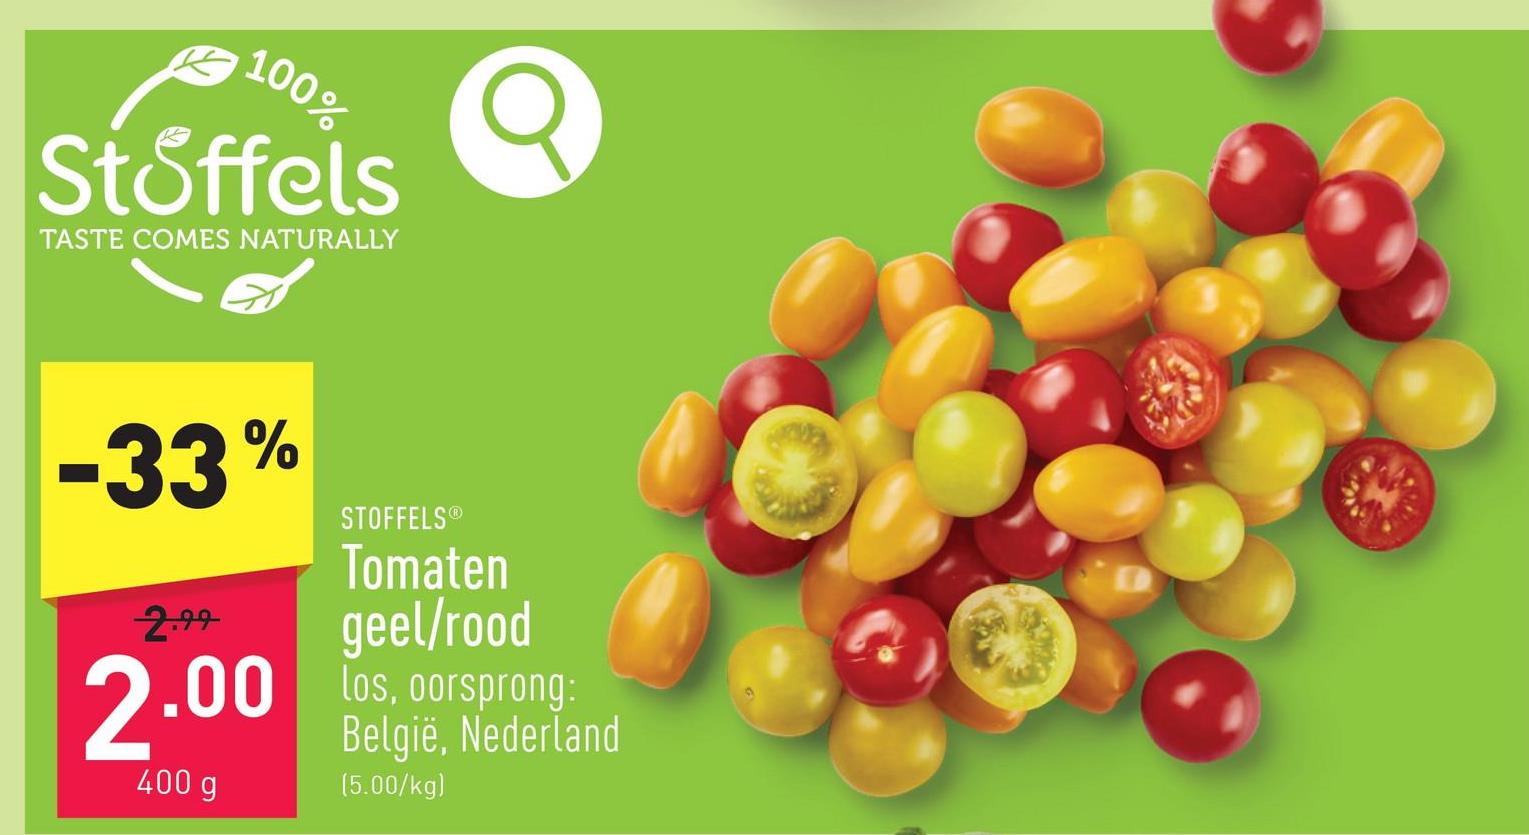 Tomaten geel/rood los, oorsprong: België, Nederland